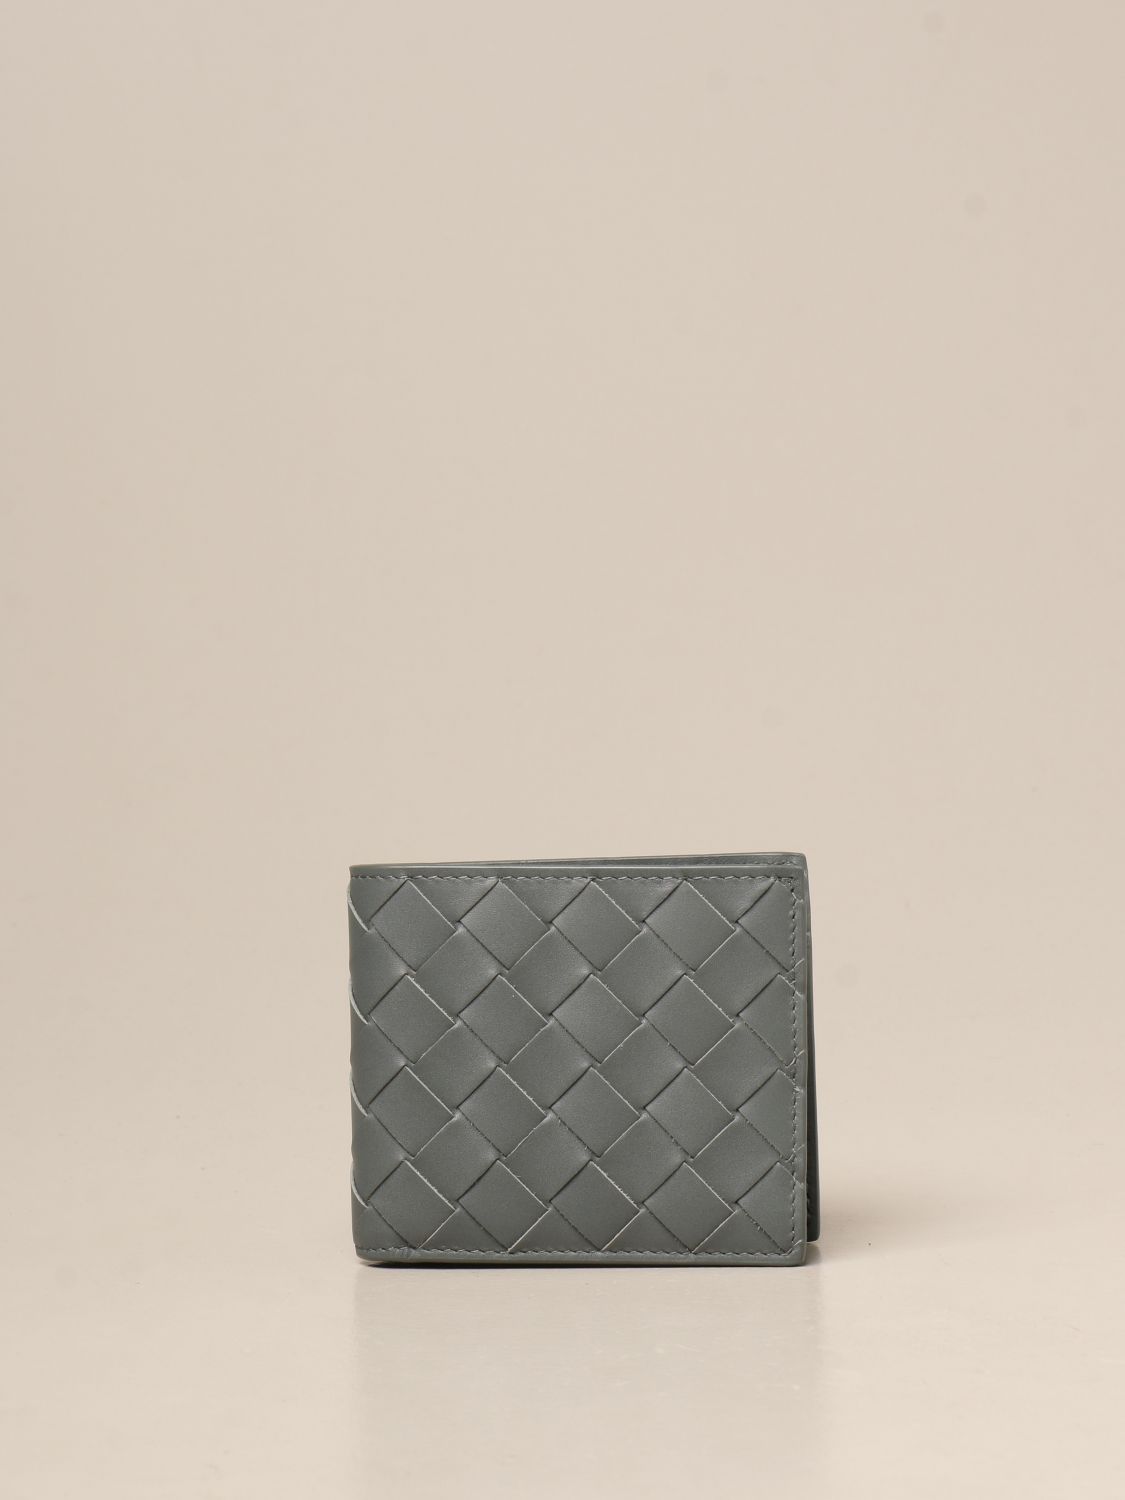 BOTTEGA VENETA: wallet in woven leather 1.5 - Green | Bottega Veneta ...